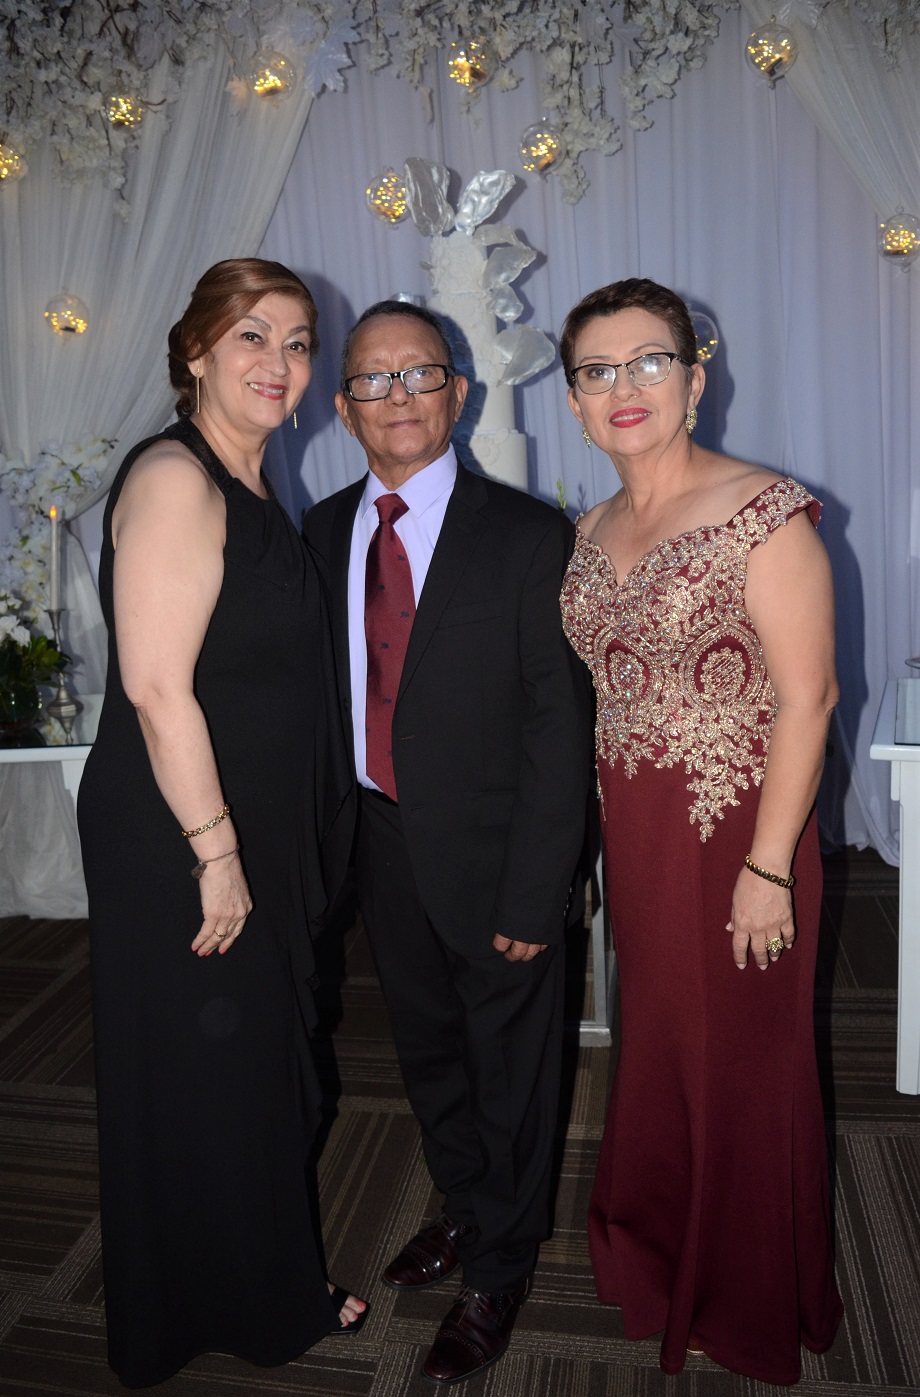 La boda de Fernando Interiano y Cindy Padilla… la unión de dos almas enamoradas